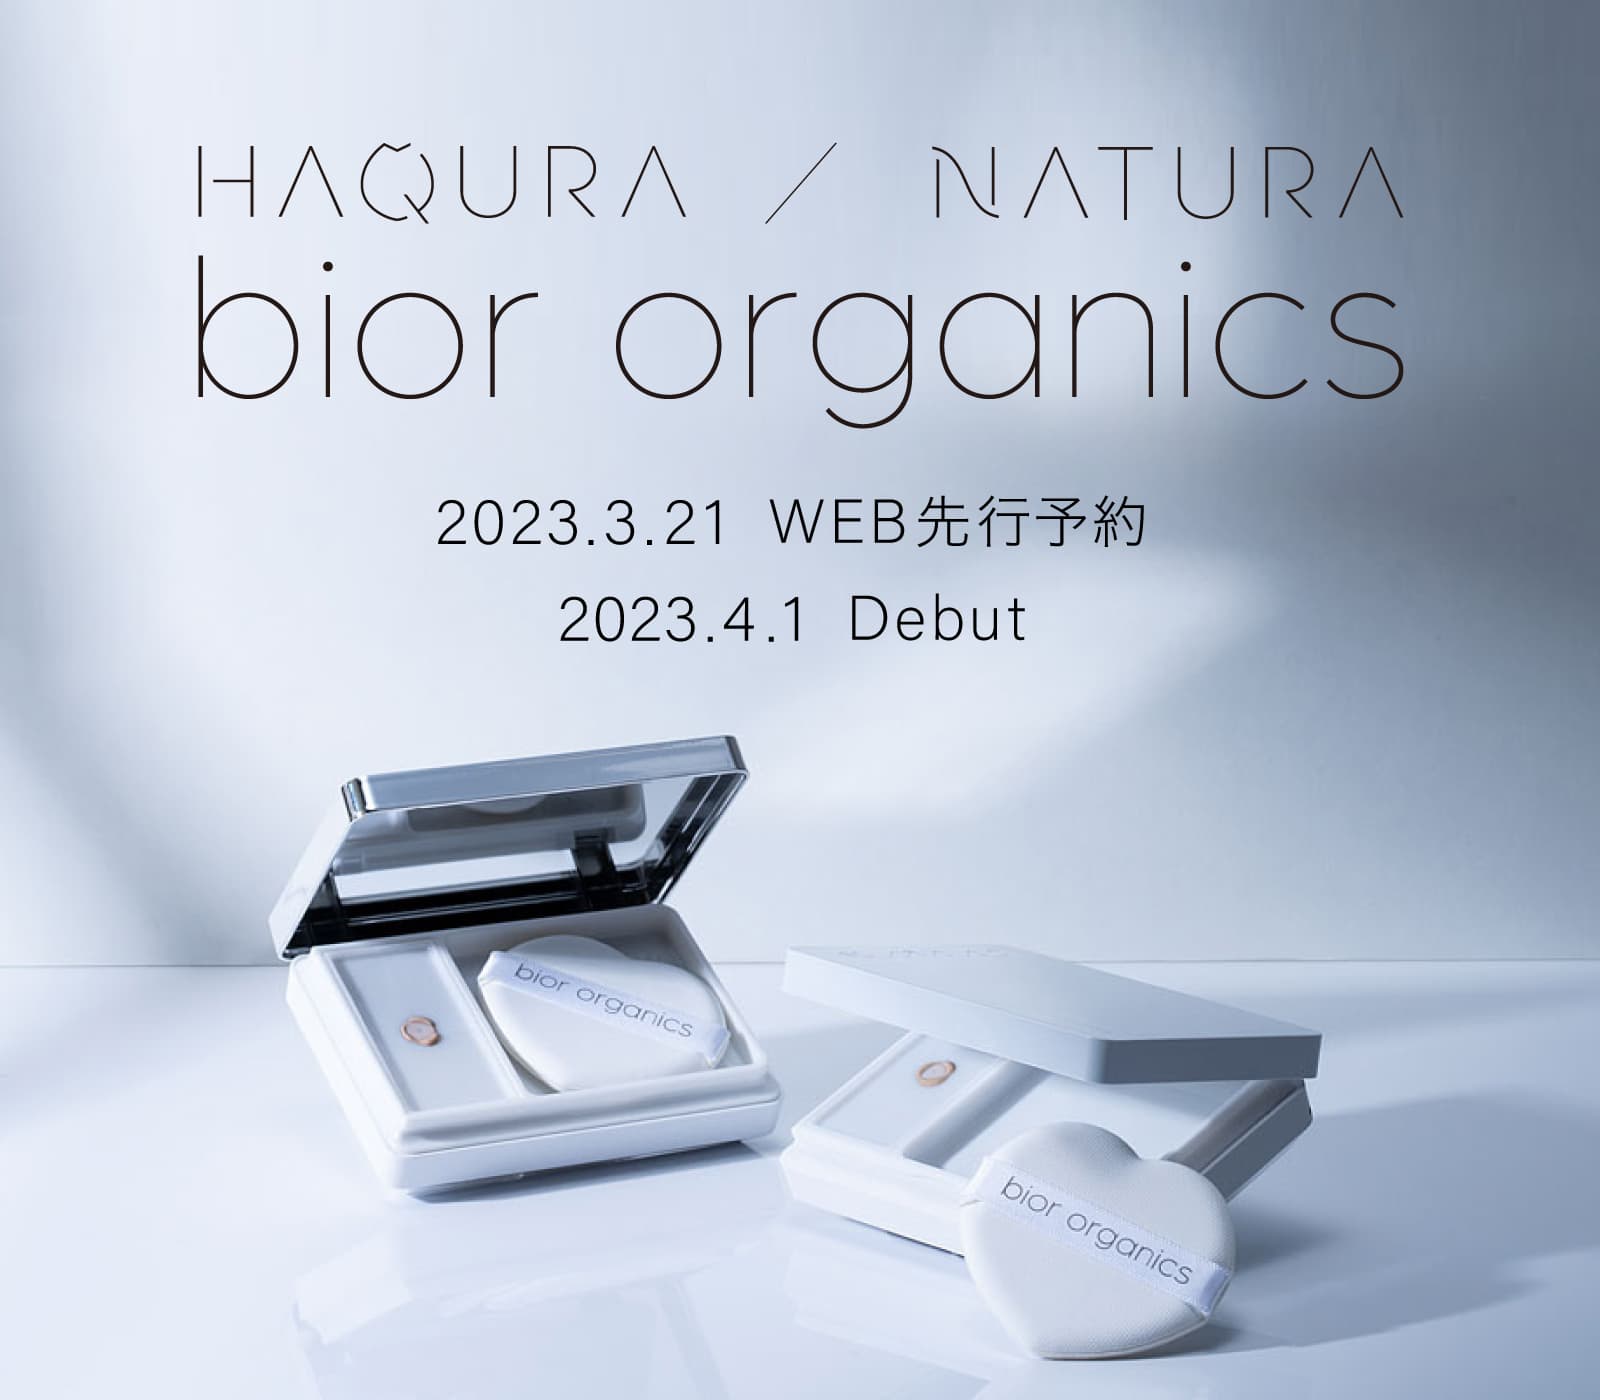 HAQURA / NATURA bior organics